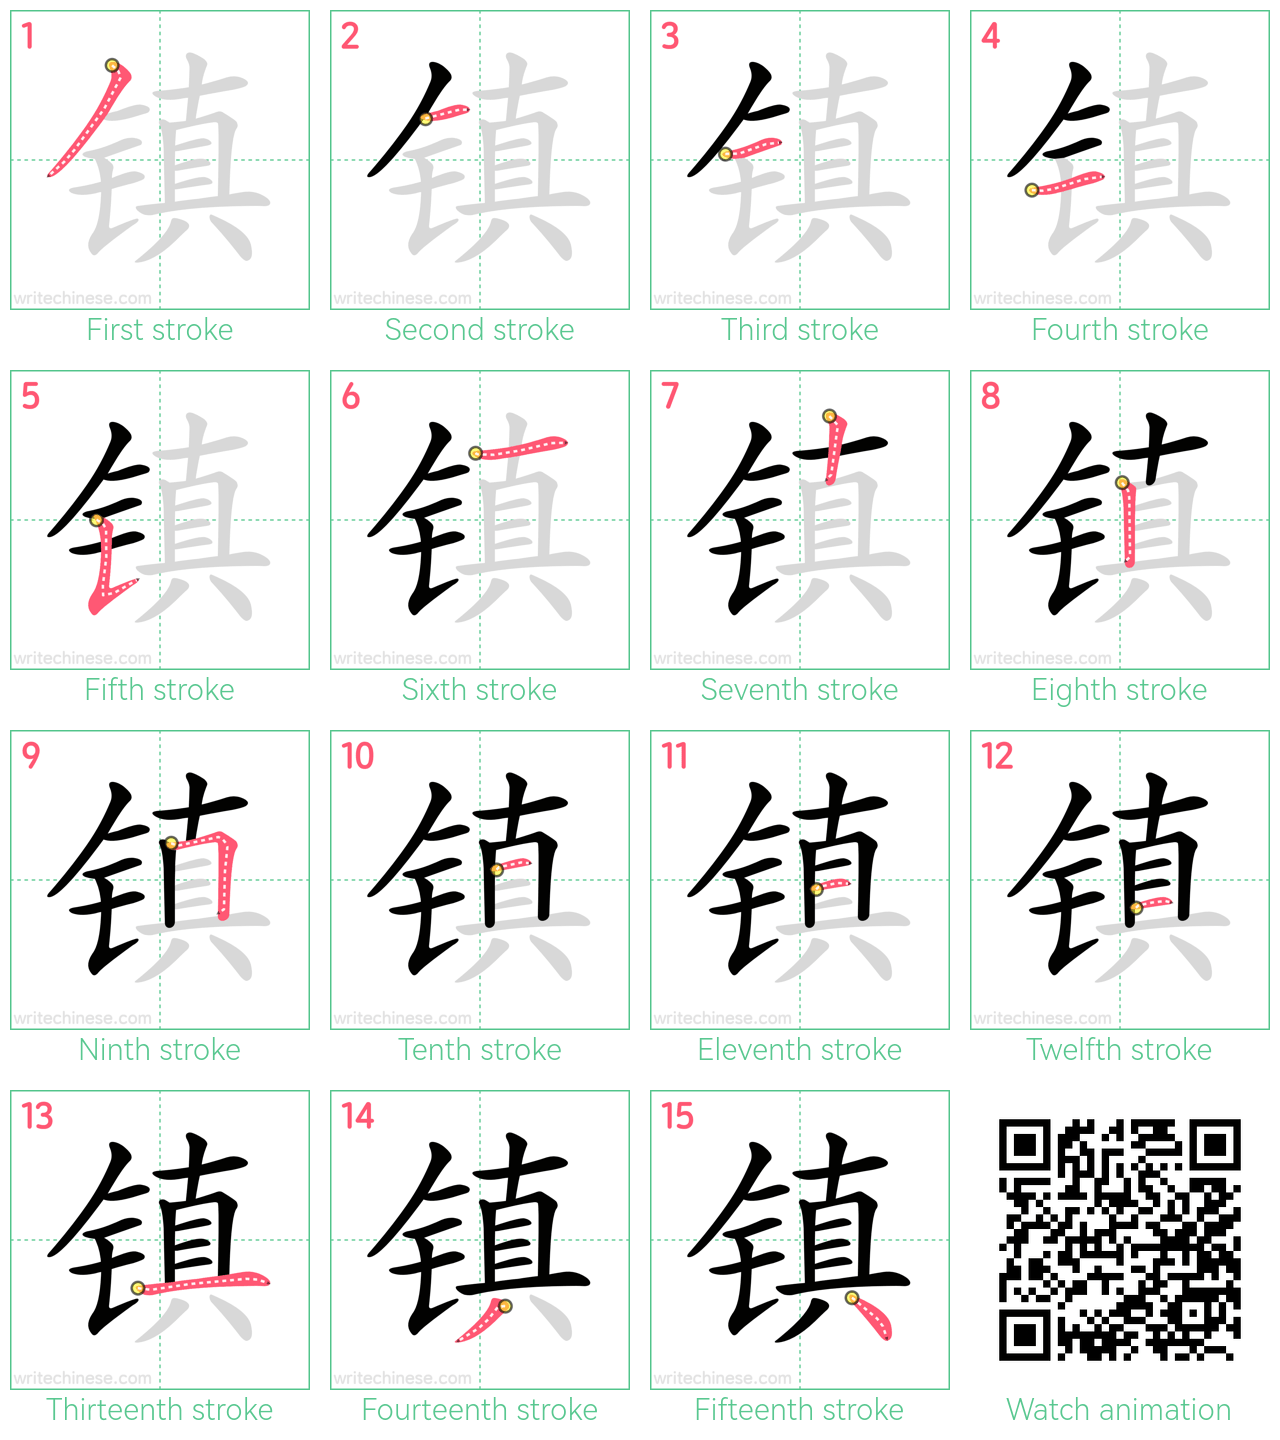 镇 step-by-step stroke order diagrams